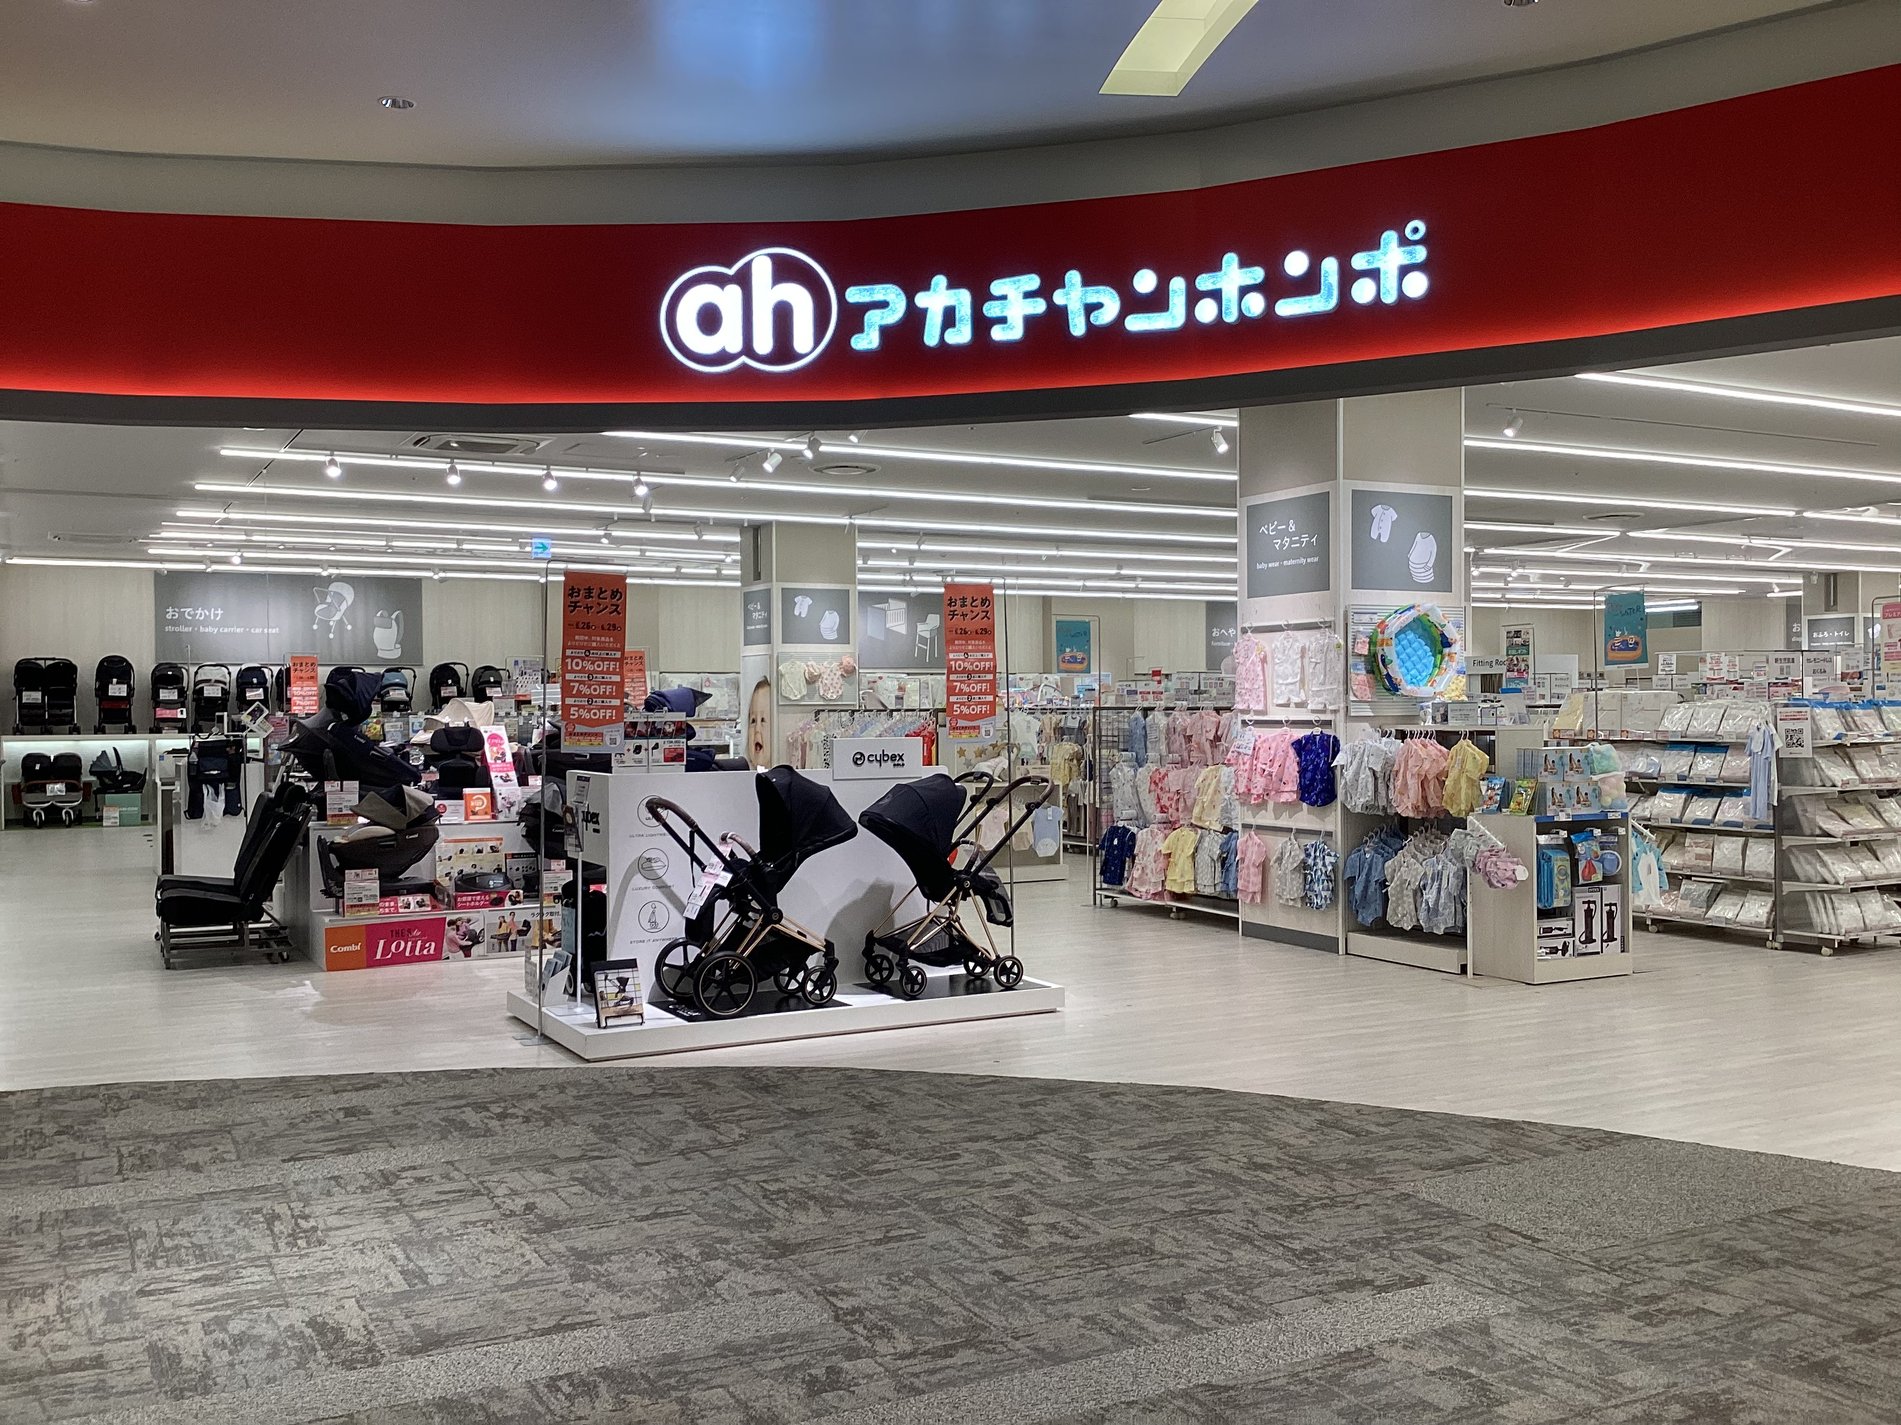 ららぽーと福岡店は
マタニティから生後12ヵ月ごろまでの商品に絞り込んだ
新しいアカチャンホンポです